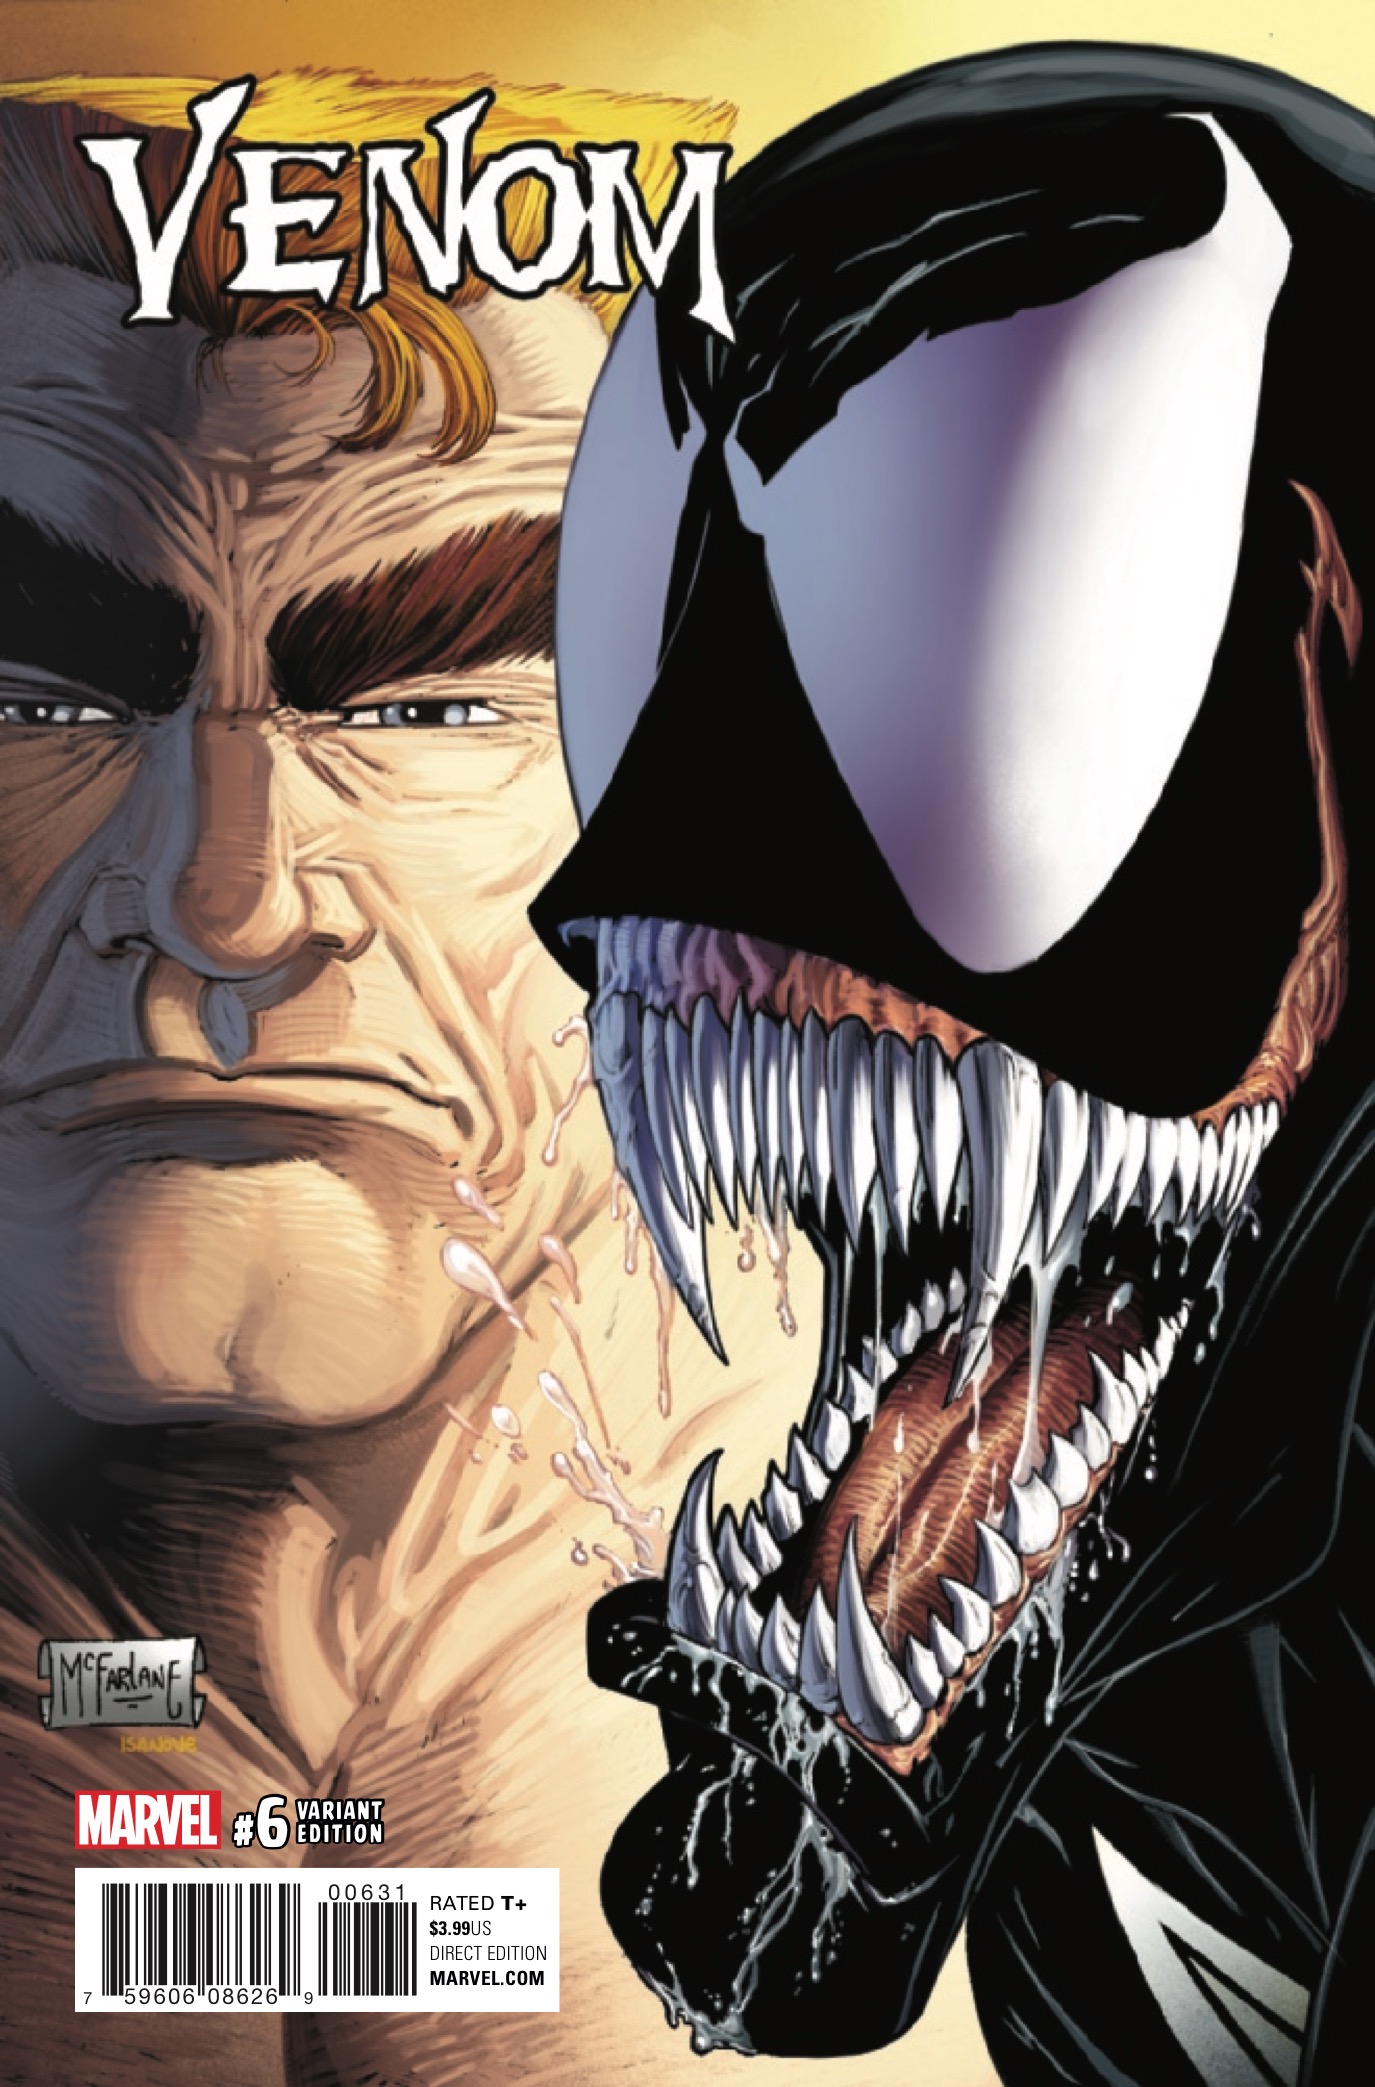 Venom #6 Review